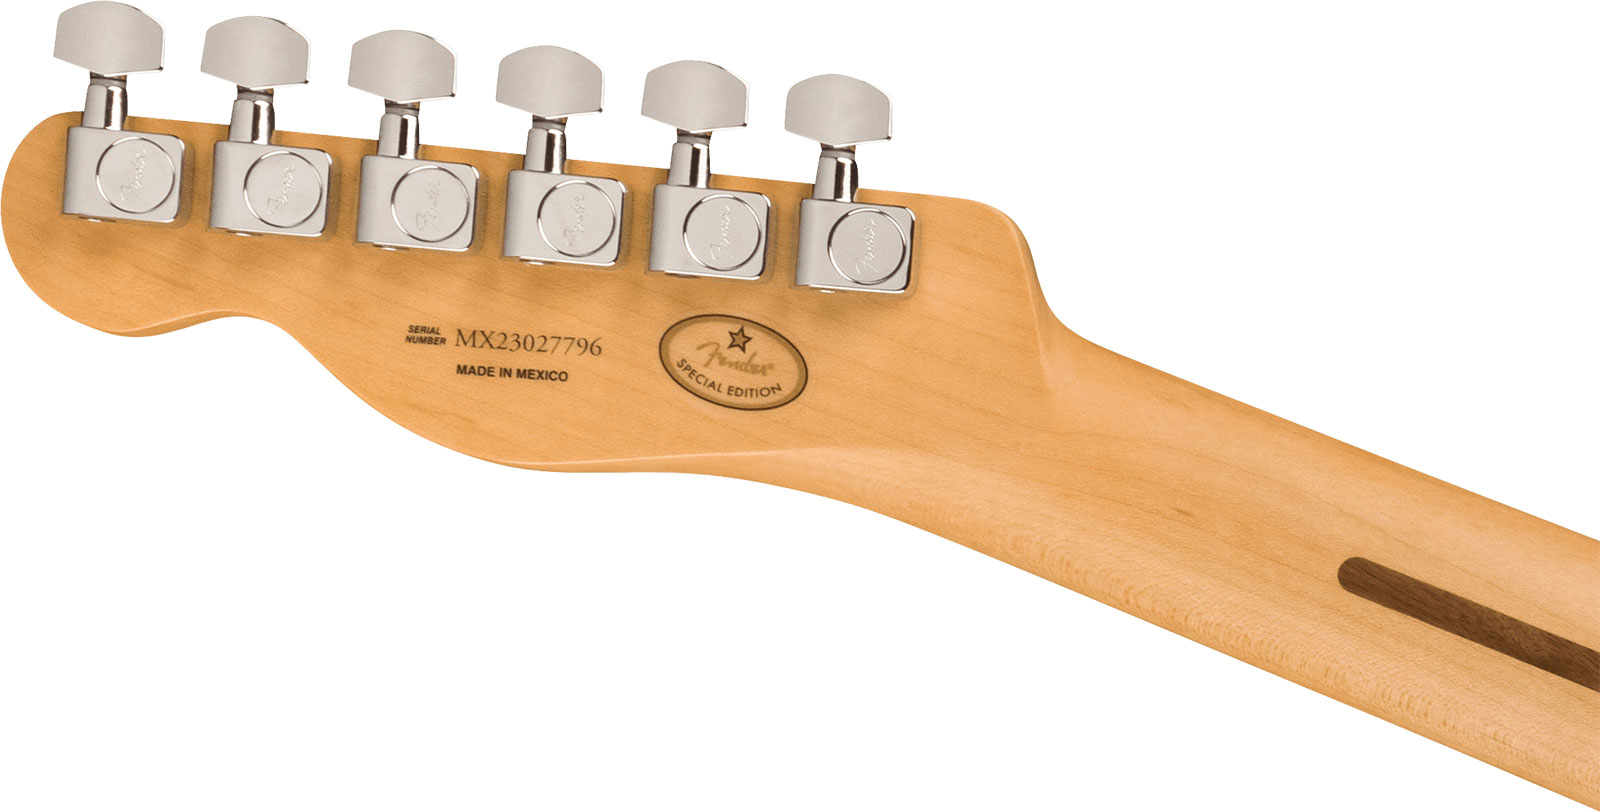 Fender Tele Player Ltd Mex 2s Pure Vintage Ht Eb - Oxblood - Guitarra eléctrica con forma de tel - Variation 3